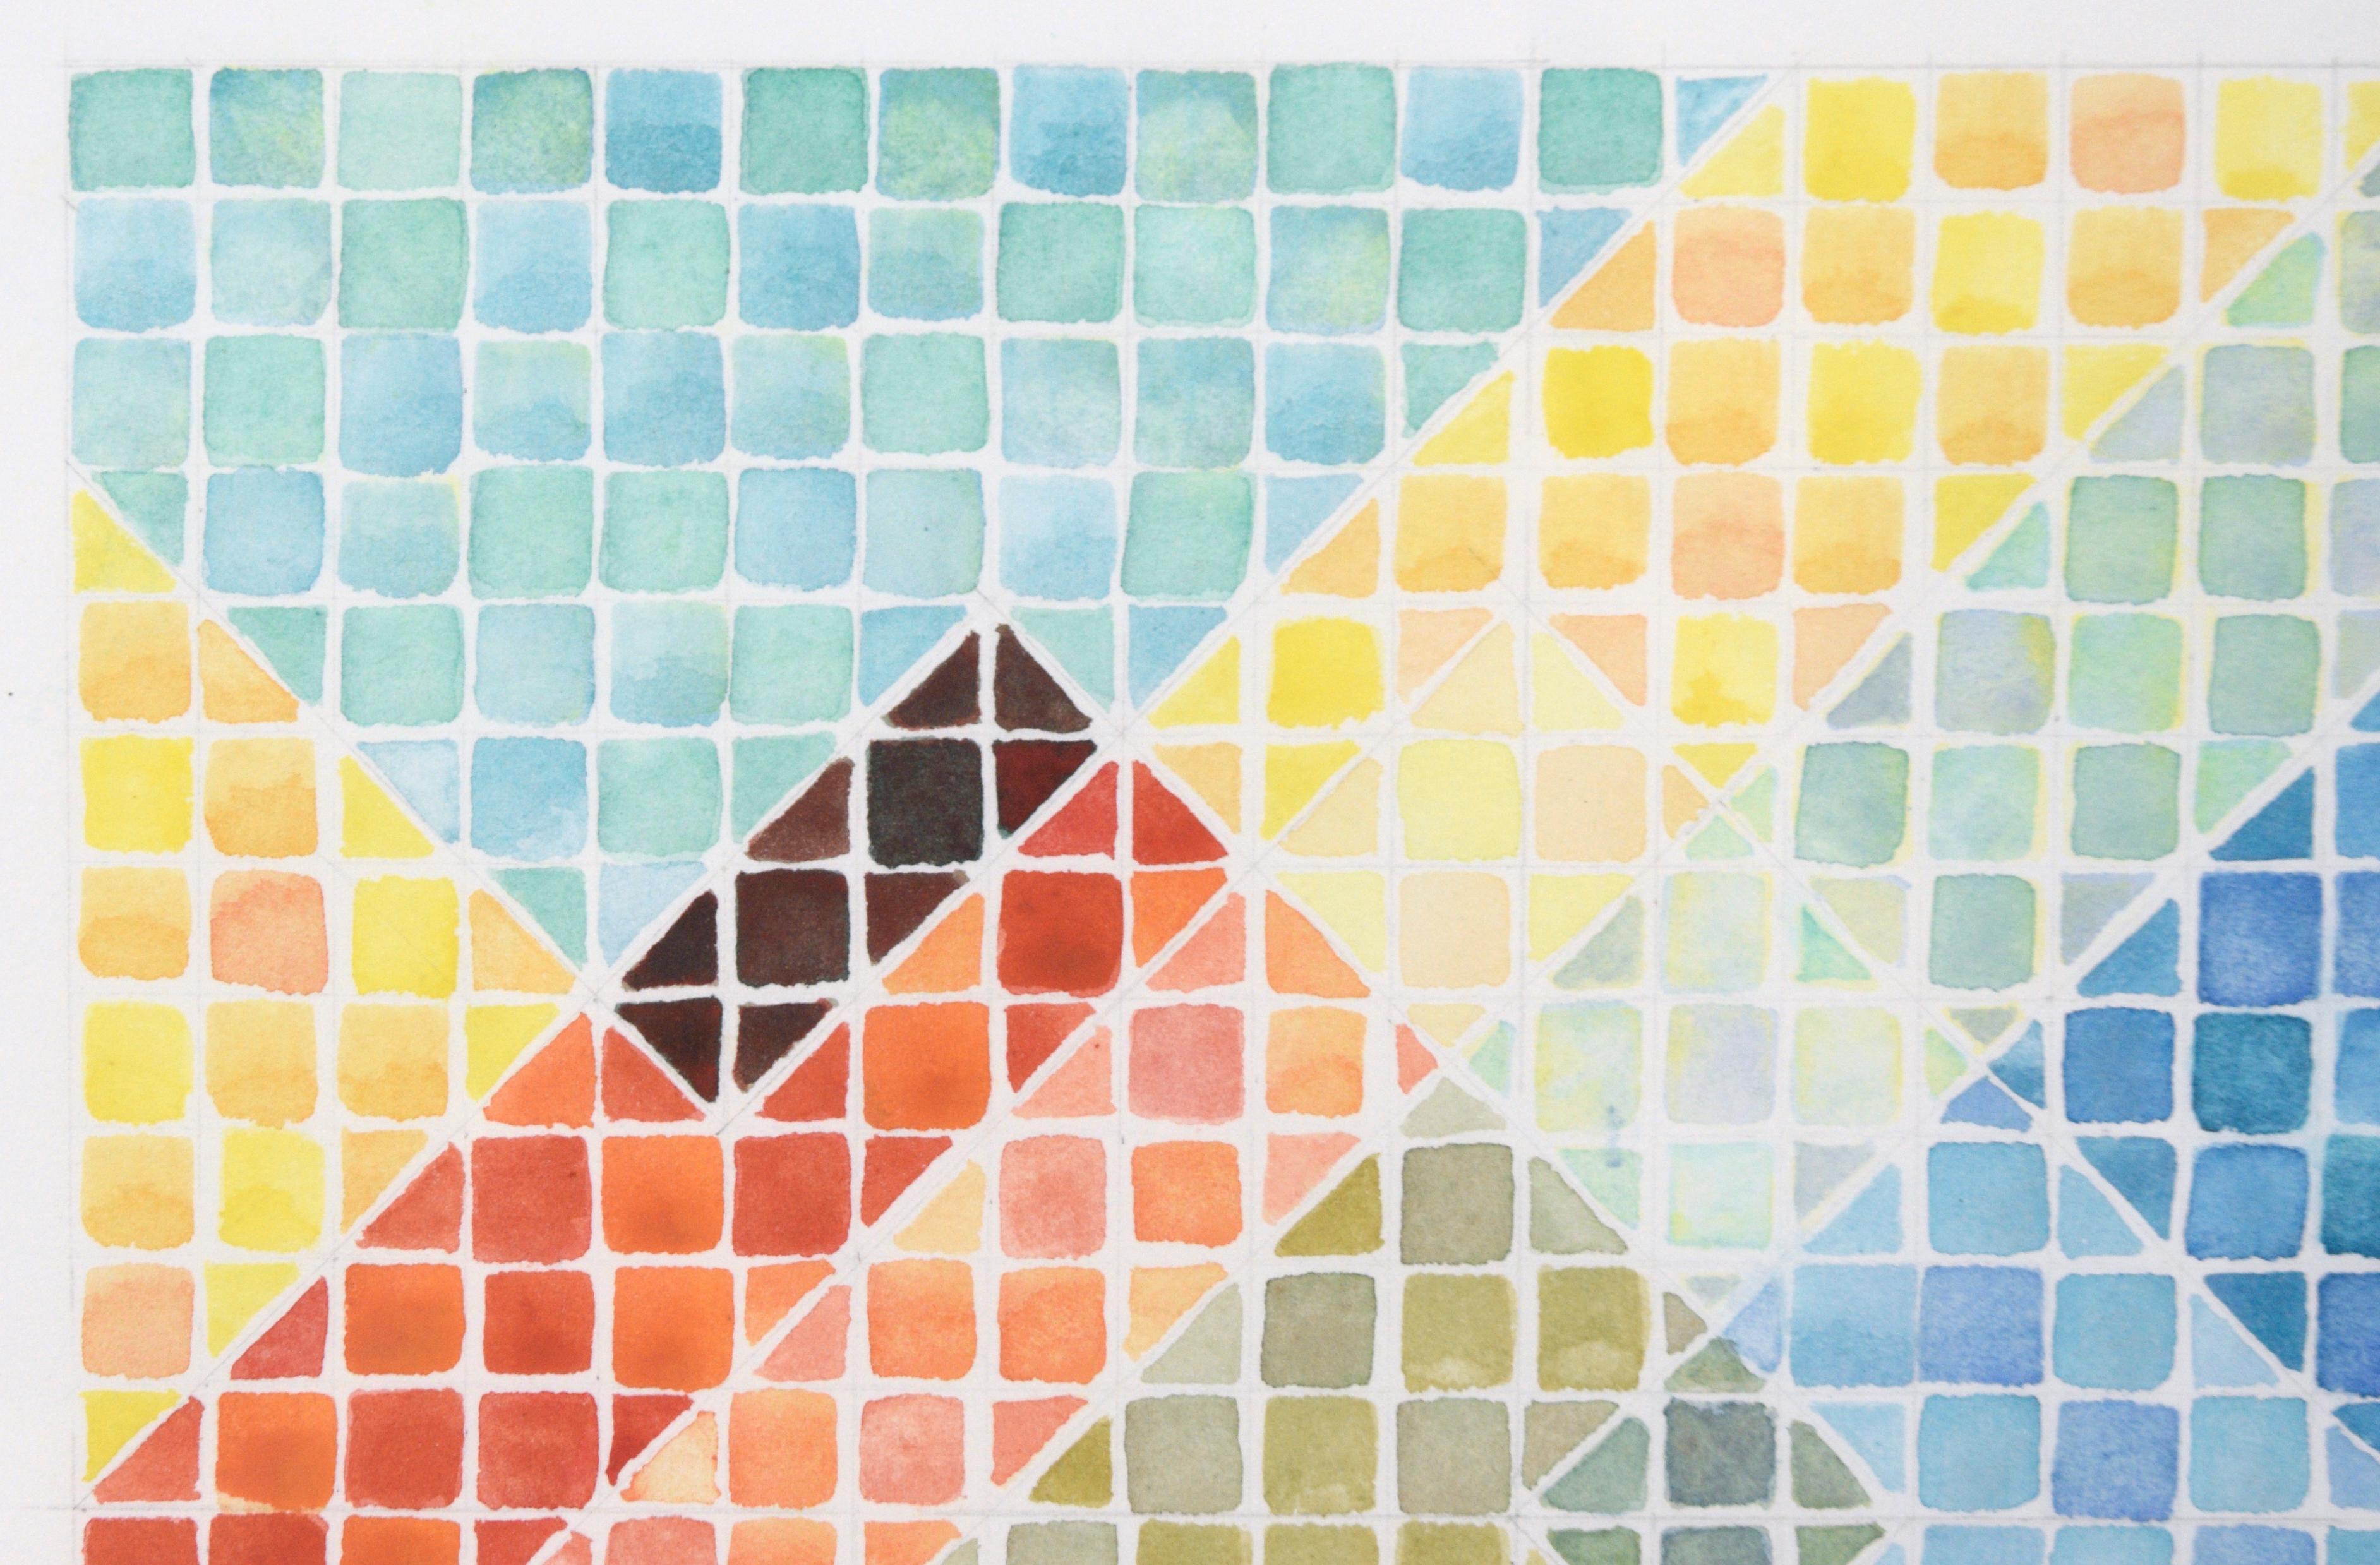 Composition d'op-art très précise d'un artiste inconnu. Une grille de carrés colorés a été créée avec différentes couleurs, divisée par des lignes diagonales occasionnelles qui donnent l'impression de formes superposées. Les couleurs ont été